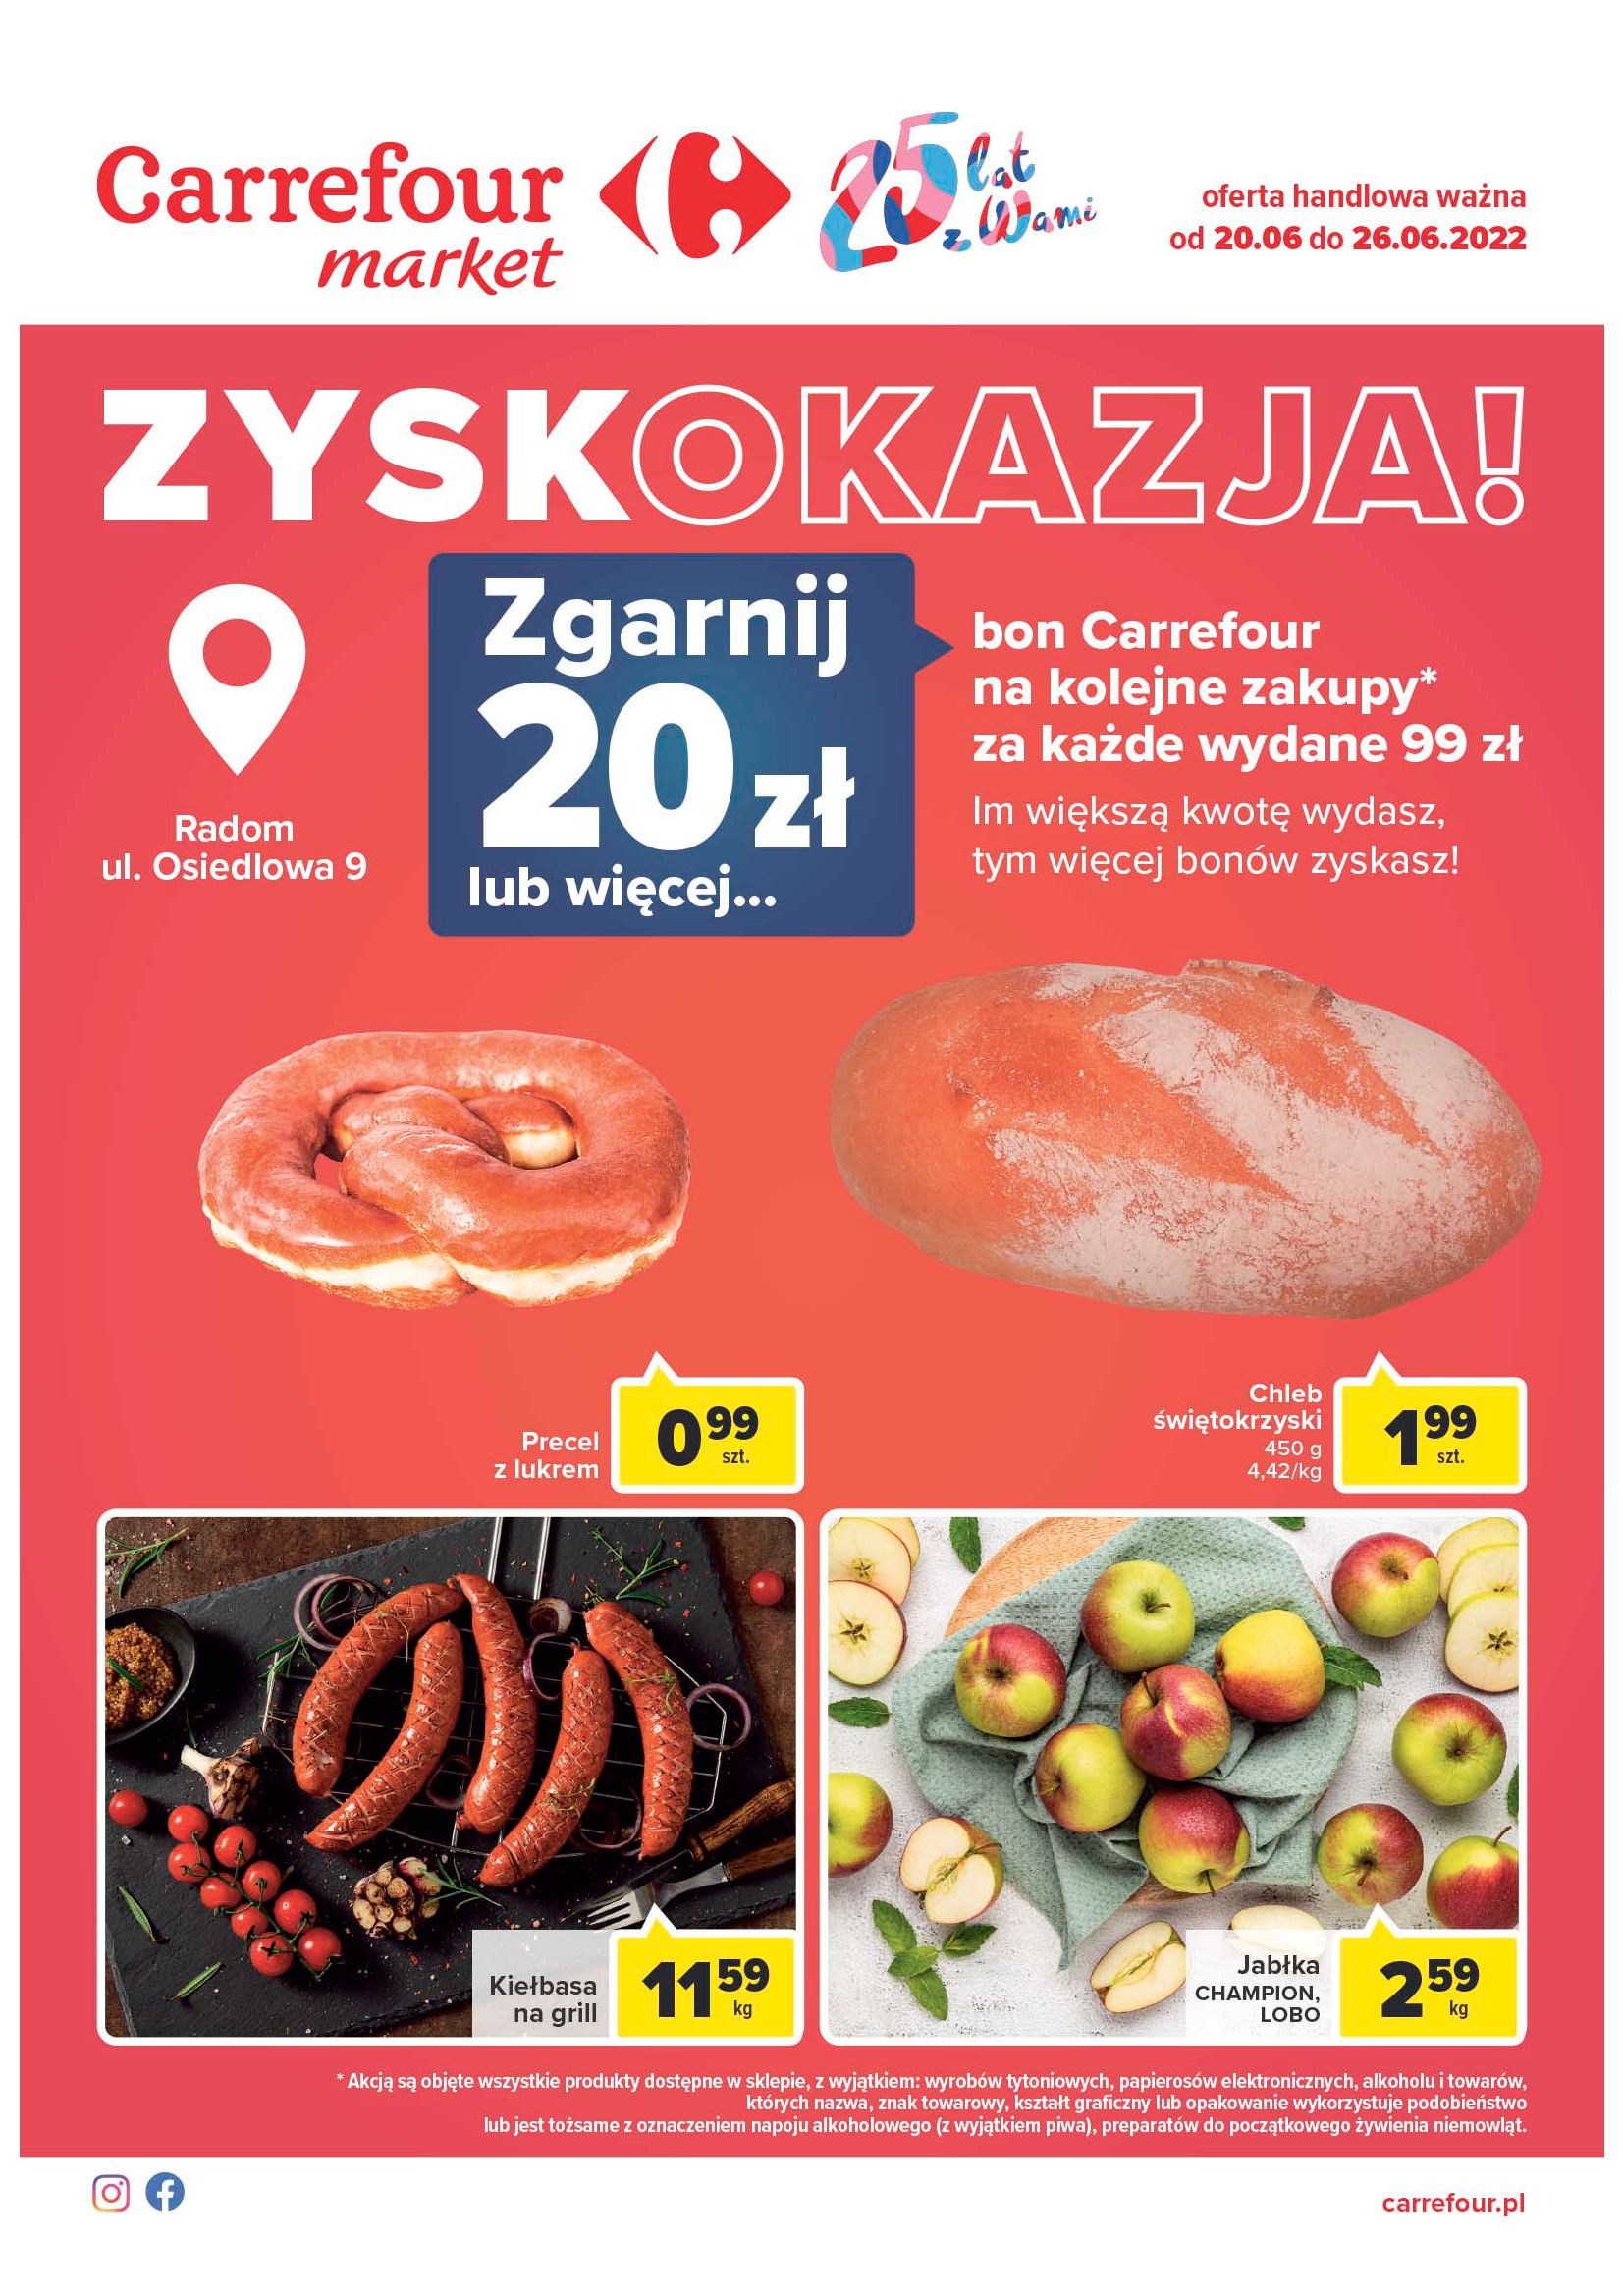 Carrefour Market:  Gazetka Carrefour Market - Zyskokazje 19.06.2022